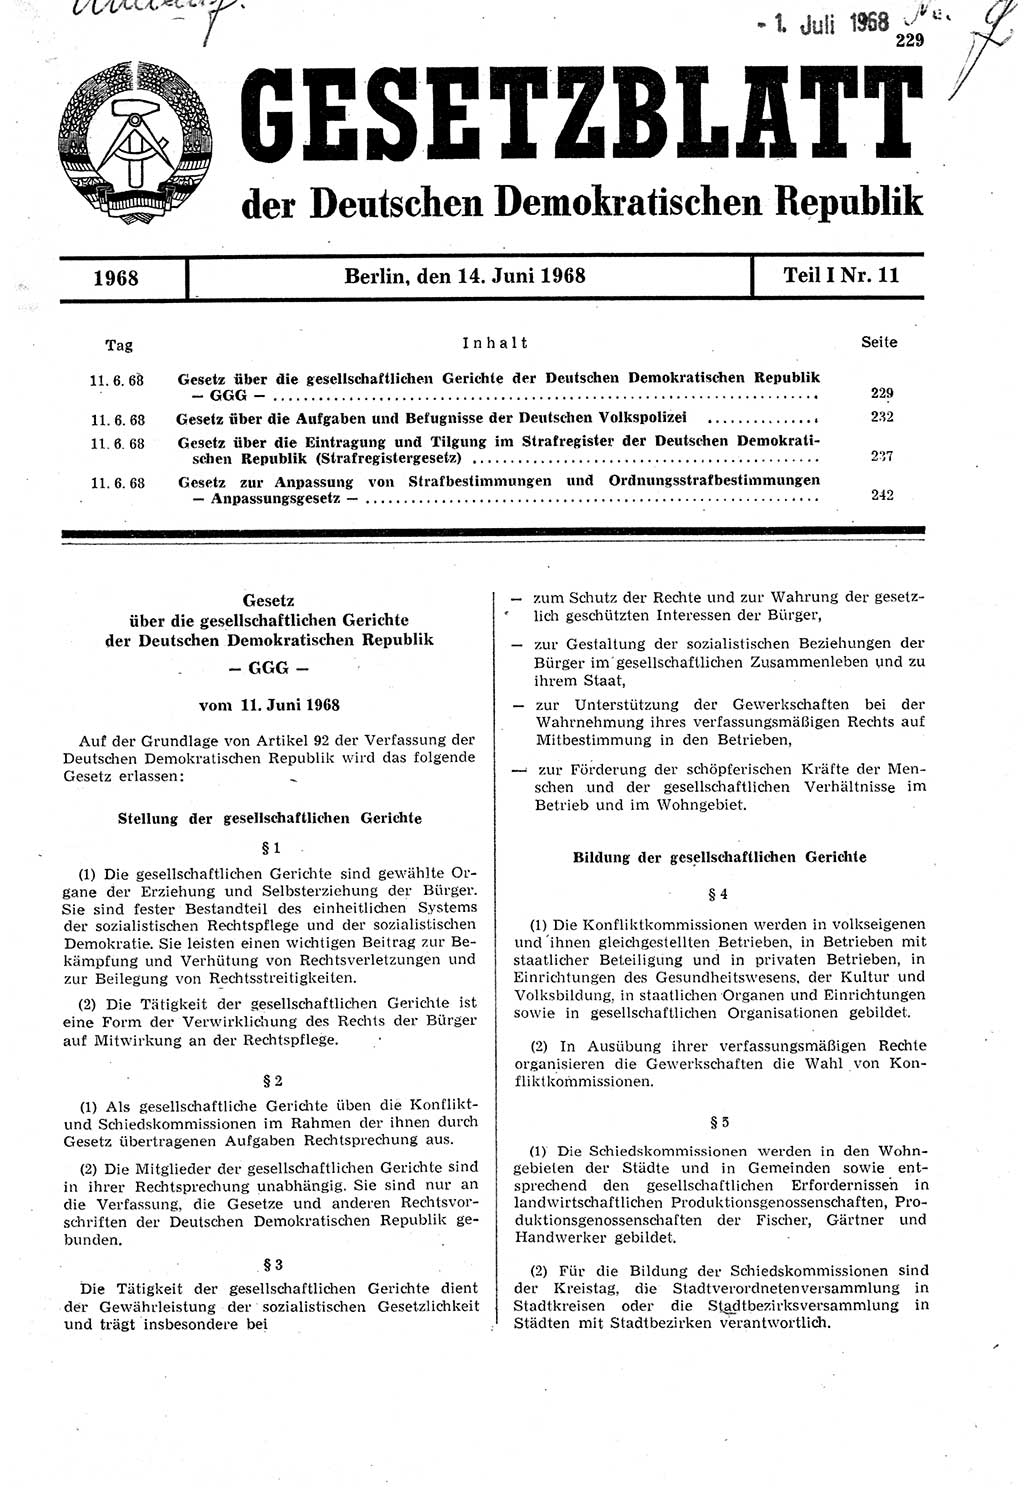 Gesetzblatt (GBl.) der Deutschen Demokratischen Republik (DDR) Teil Ⅰ 1968, Seite 229 (GBl. DDR Ⅰ 1968, S. 229)